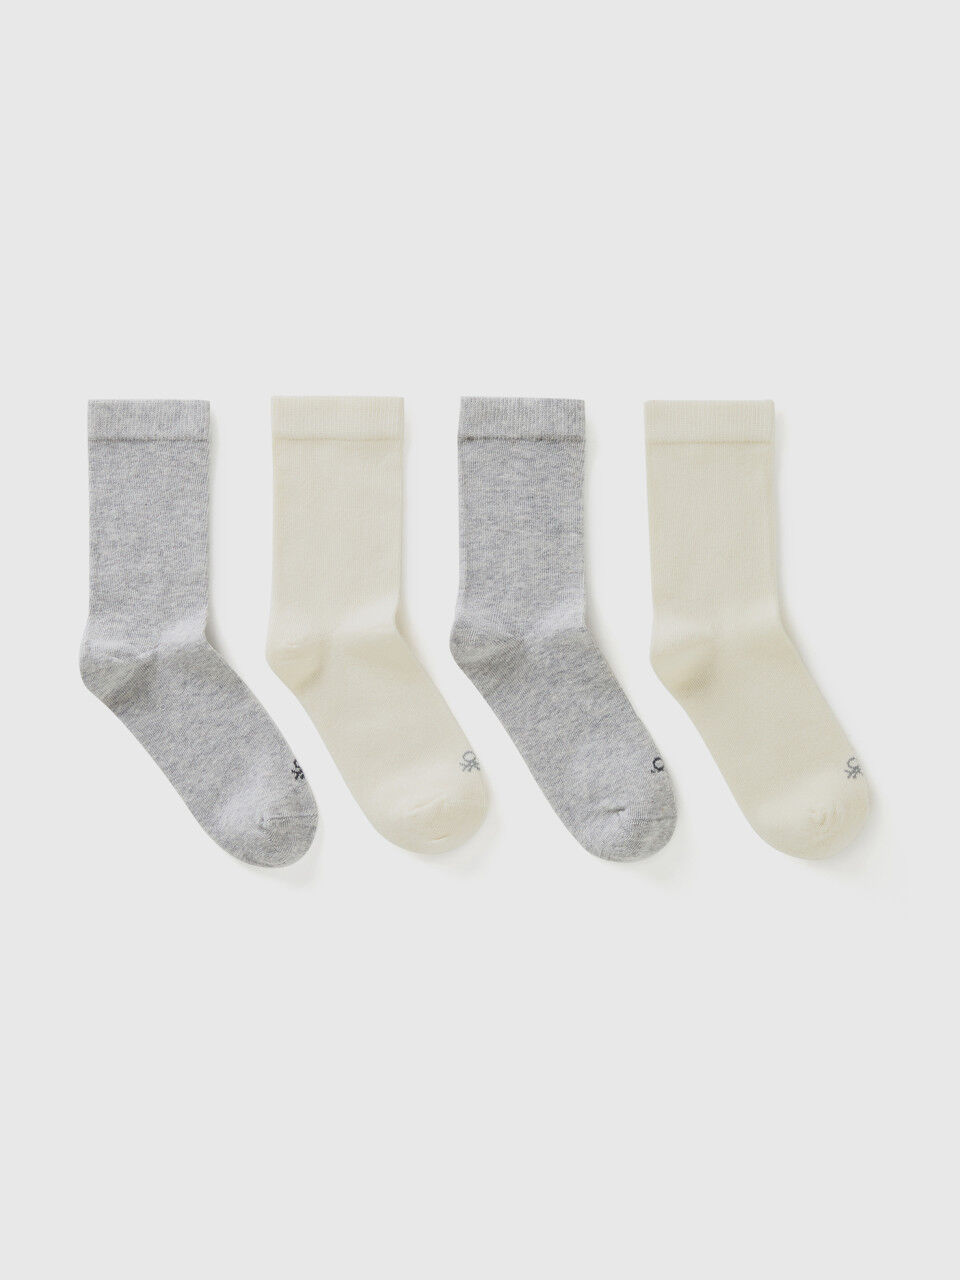 Quatre paires de chaussettes blanches et grises